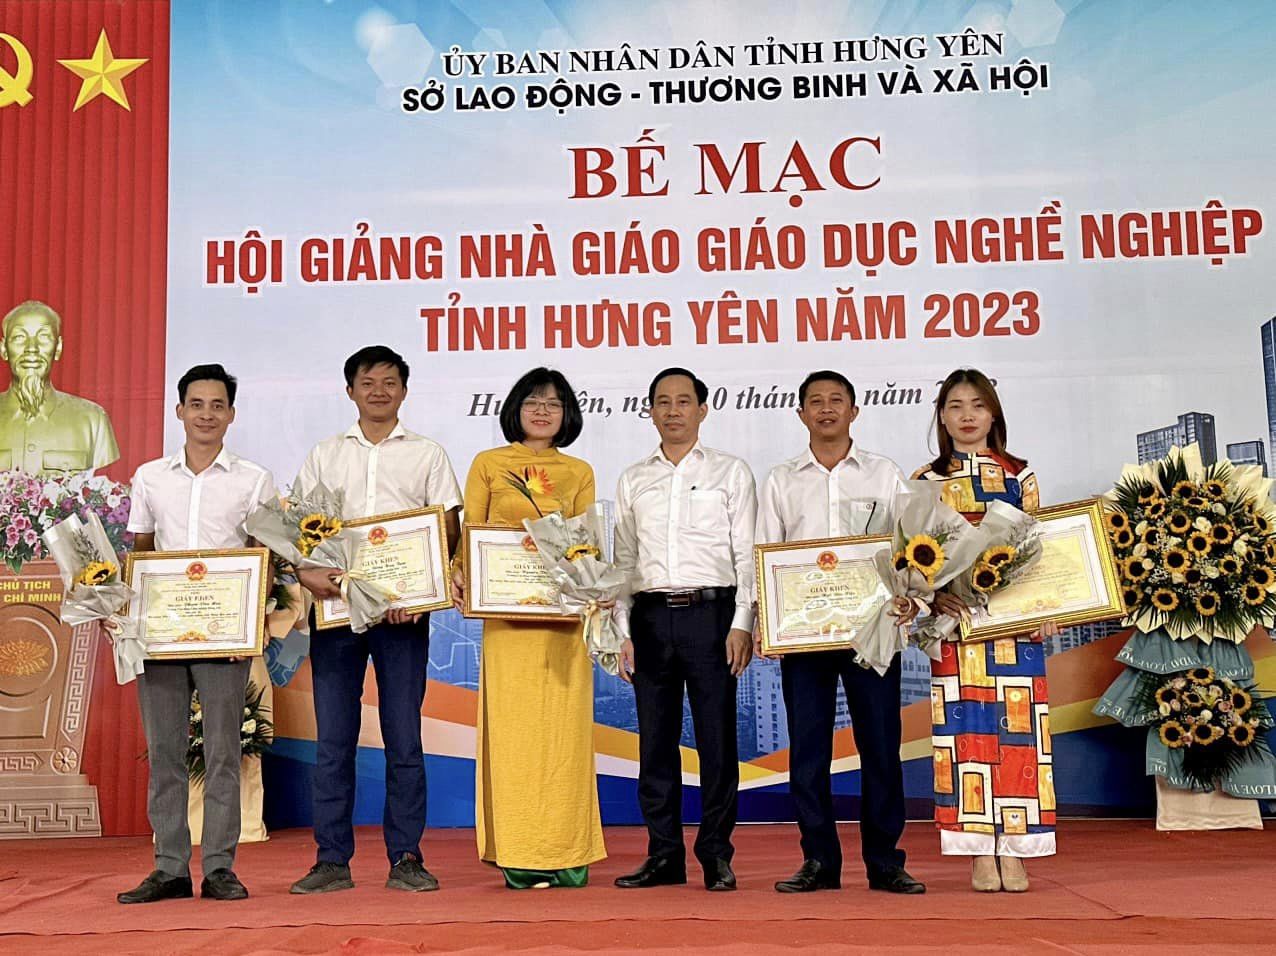 Trường Cao đẳng Công nghiệp Hưng Yên đạt thành tích cao trong Hội giảng nhà giáo giáo dục nghề nghiệp tỉnh Hưng Yên năm 2023